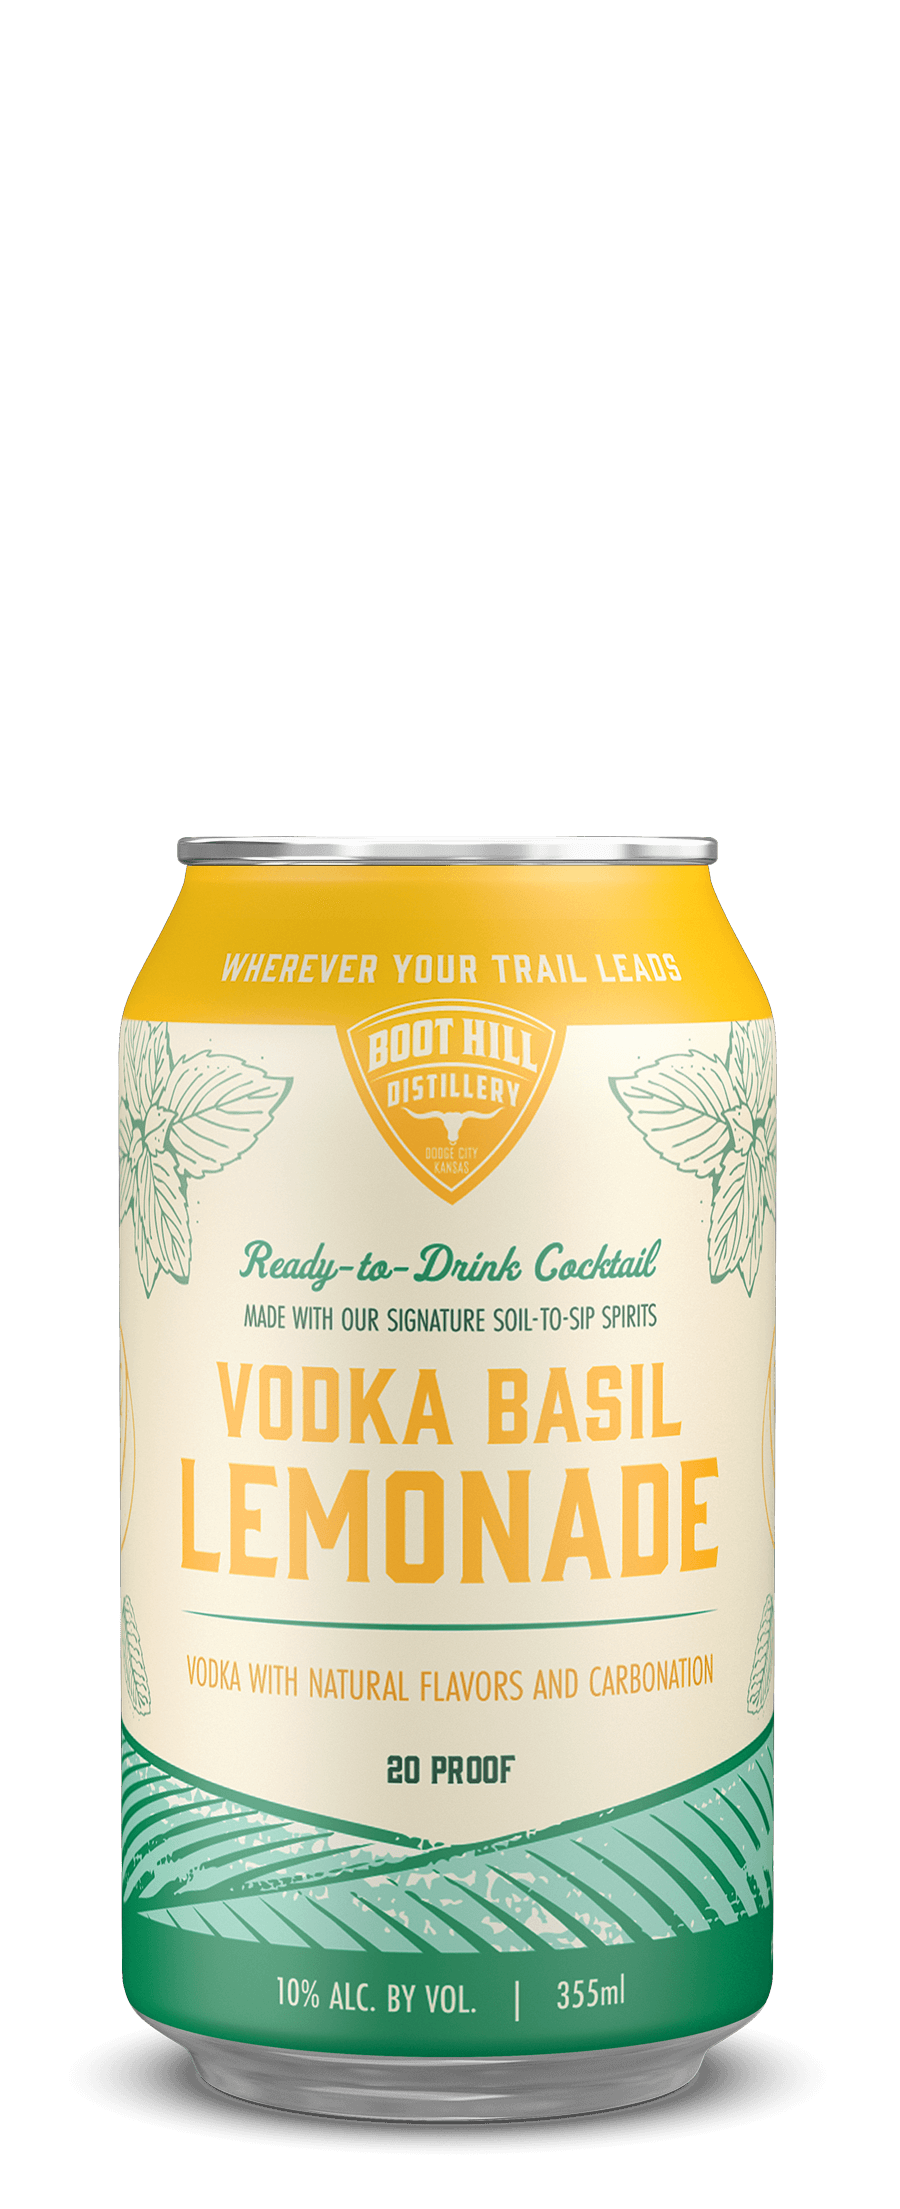 Vodka Basil Lemonade